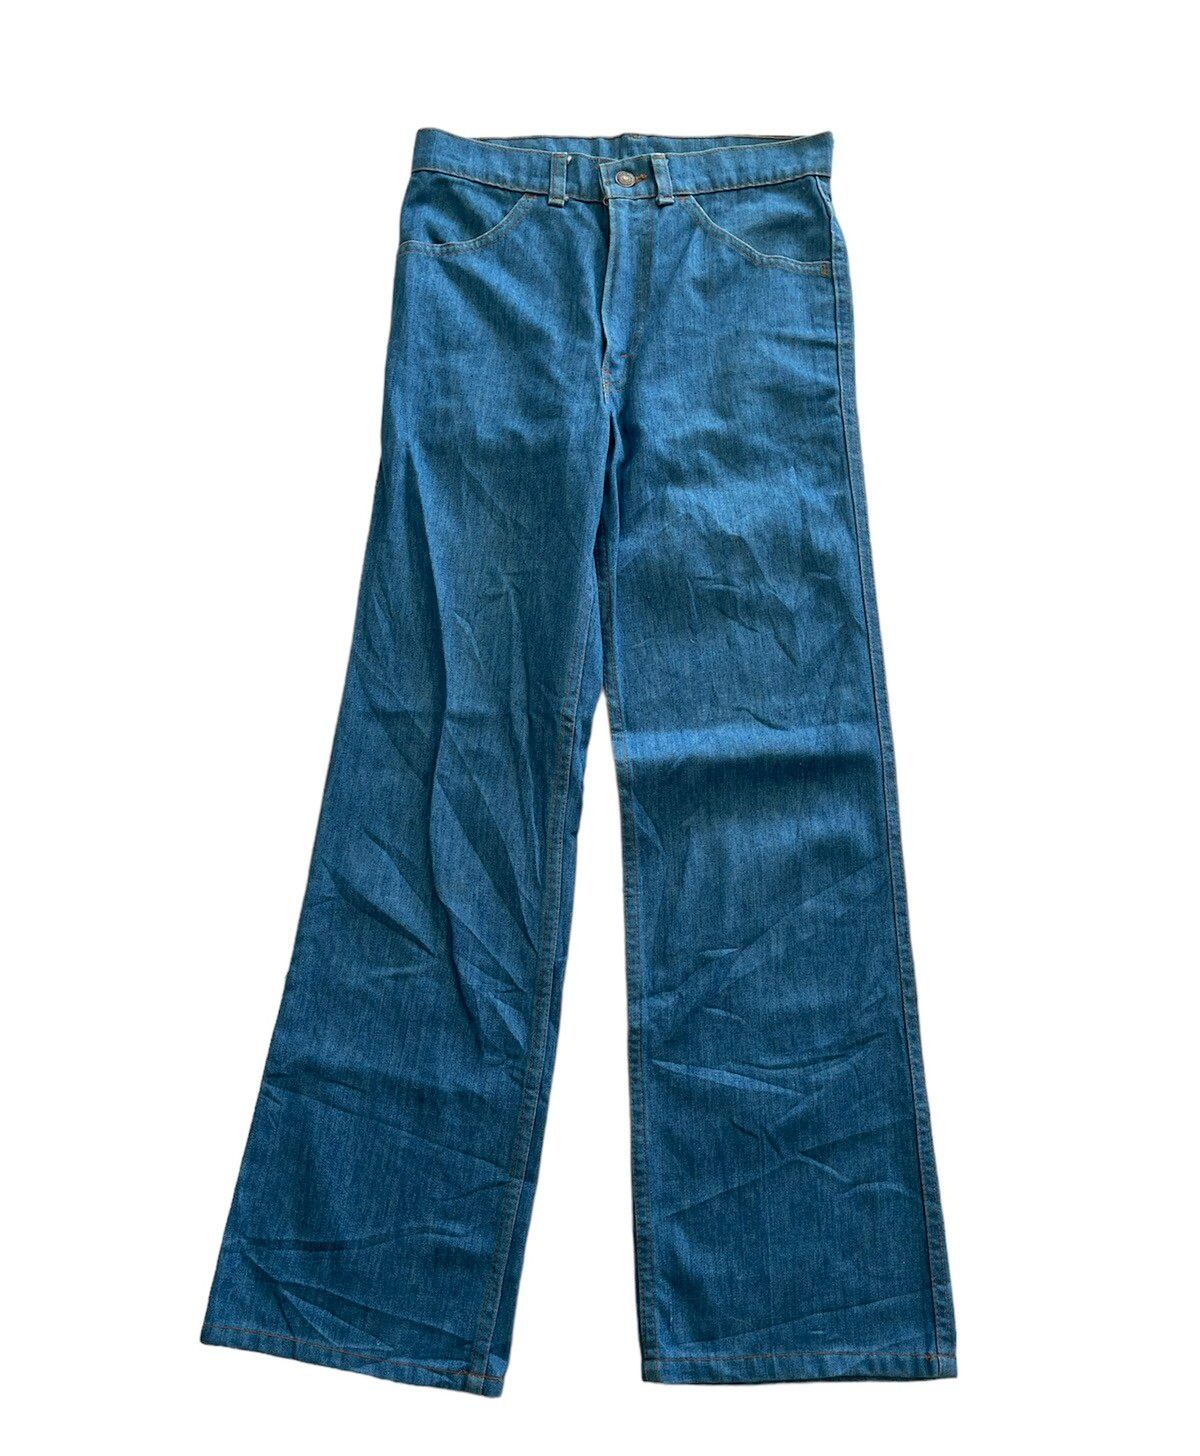 Vintage Levis orange tab 70s Flare Jeans - 1